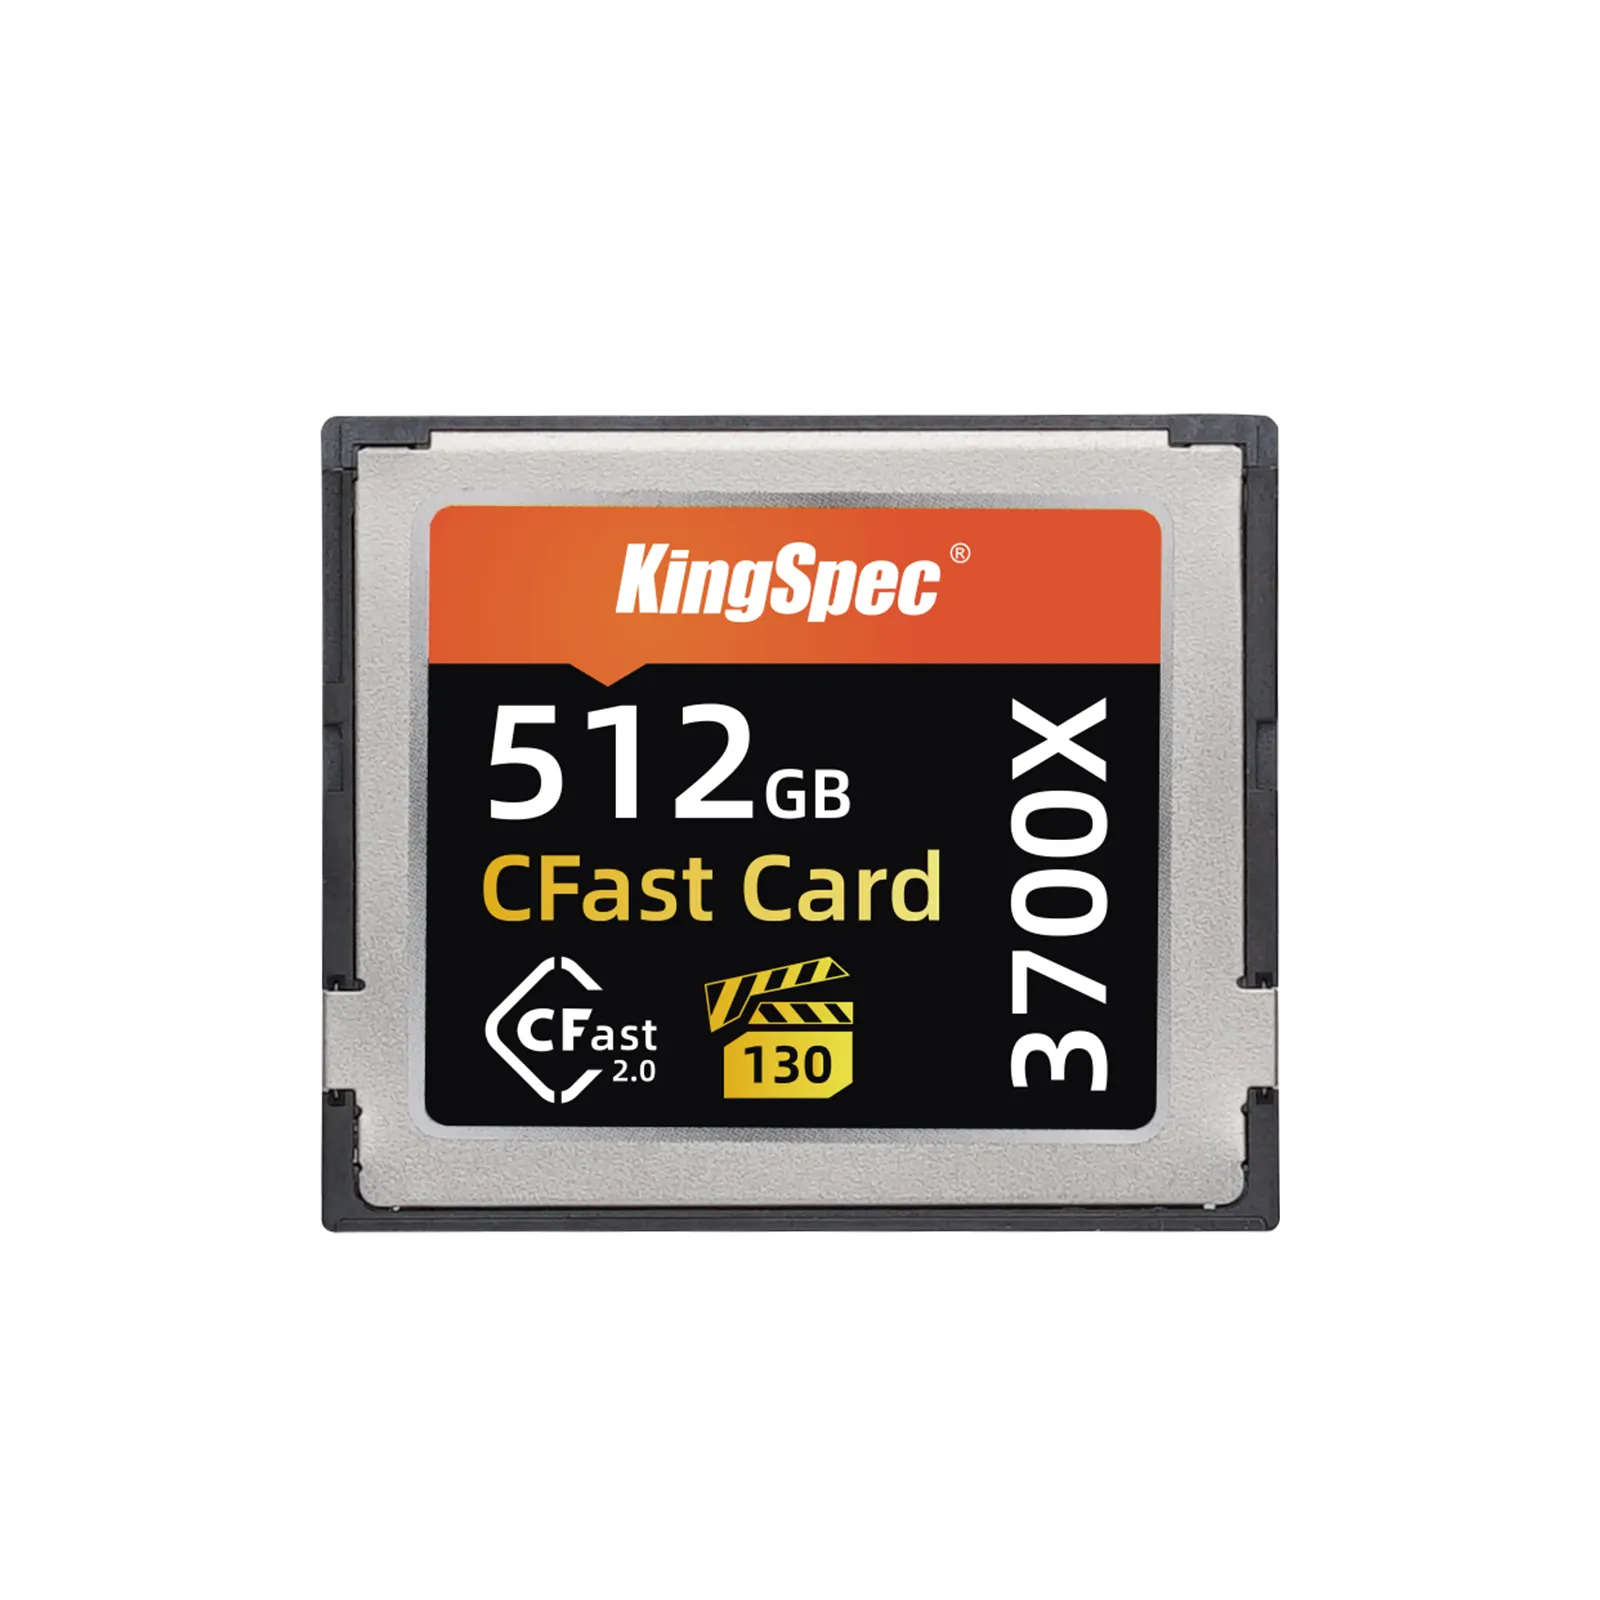 Báo Giá Độc Quyền KingSpec Cho Các Sản Phẩm Phổ Biến Giao Diện SATA3.0 256GB Cfast 2.0